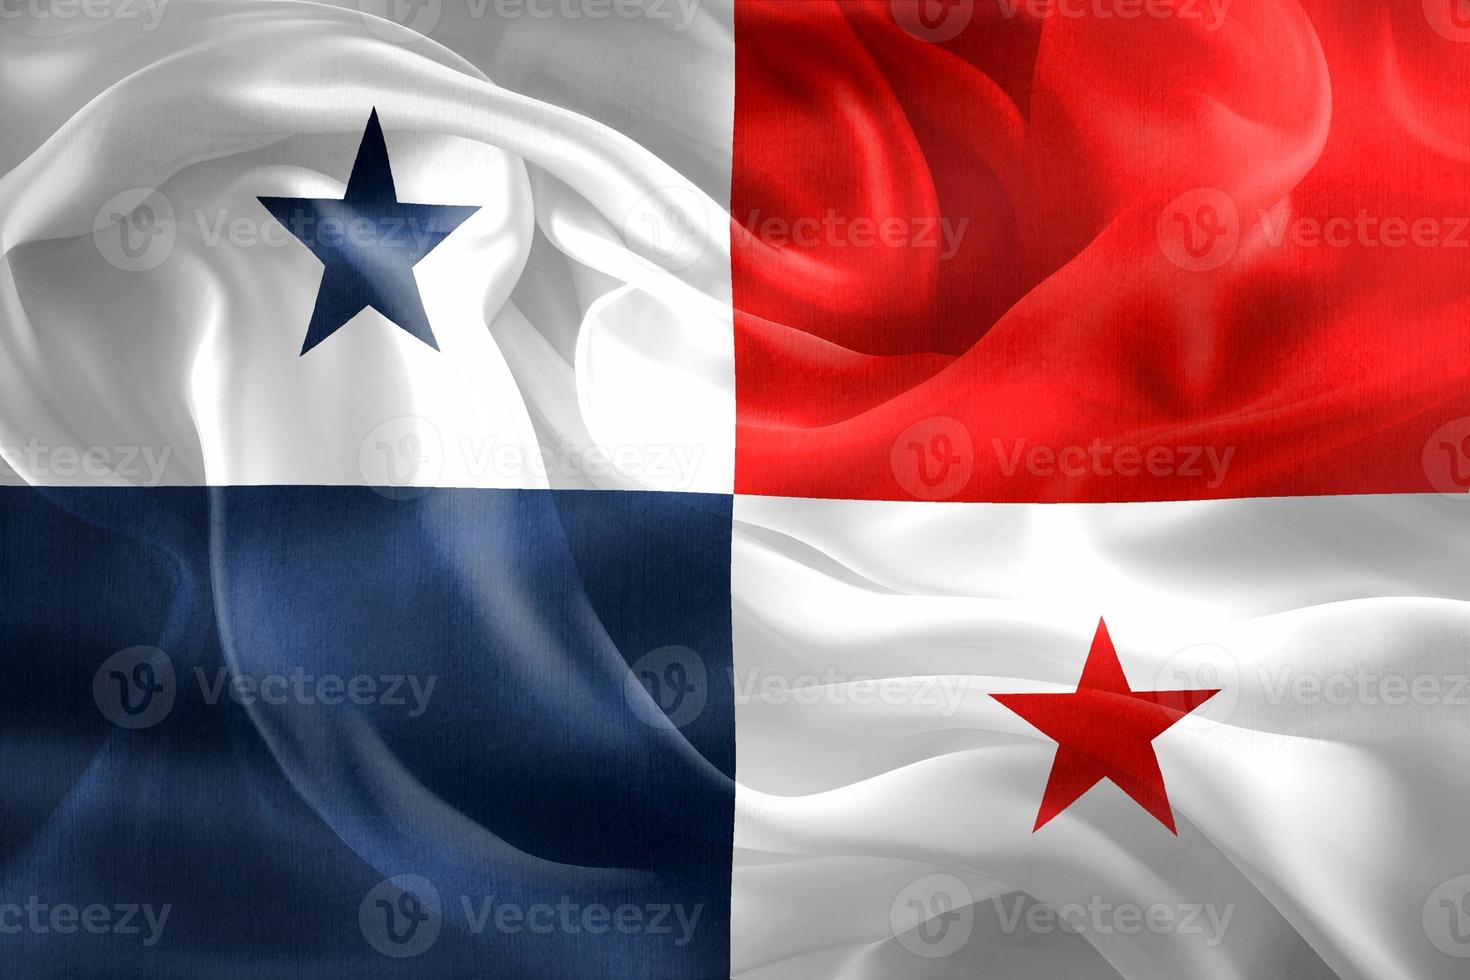 Illustration 3d d'un drapeau panaméen - drapeau en tissu ondulant réaliste photo